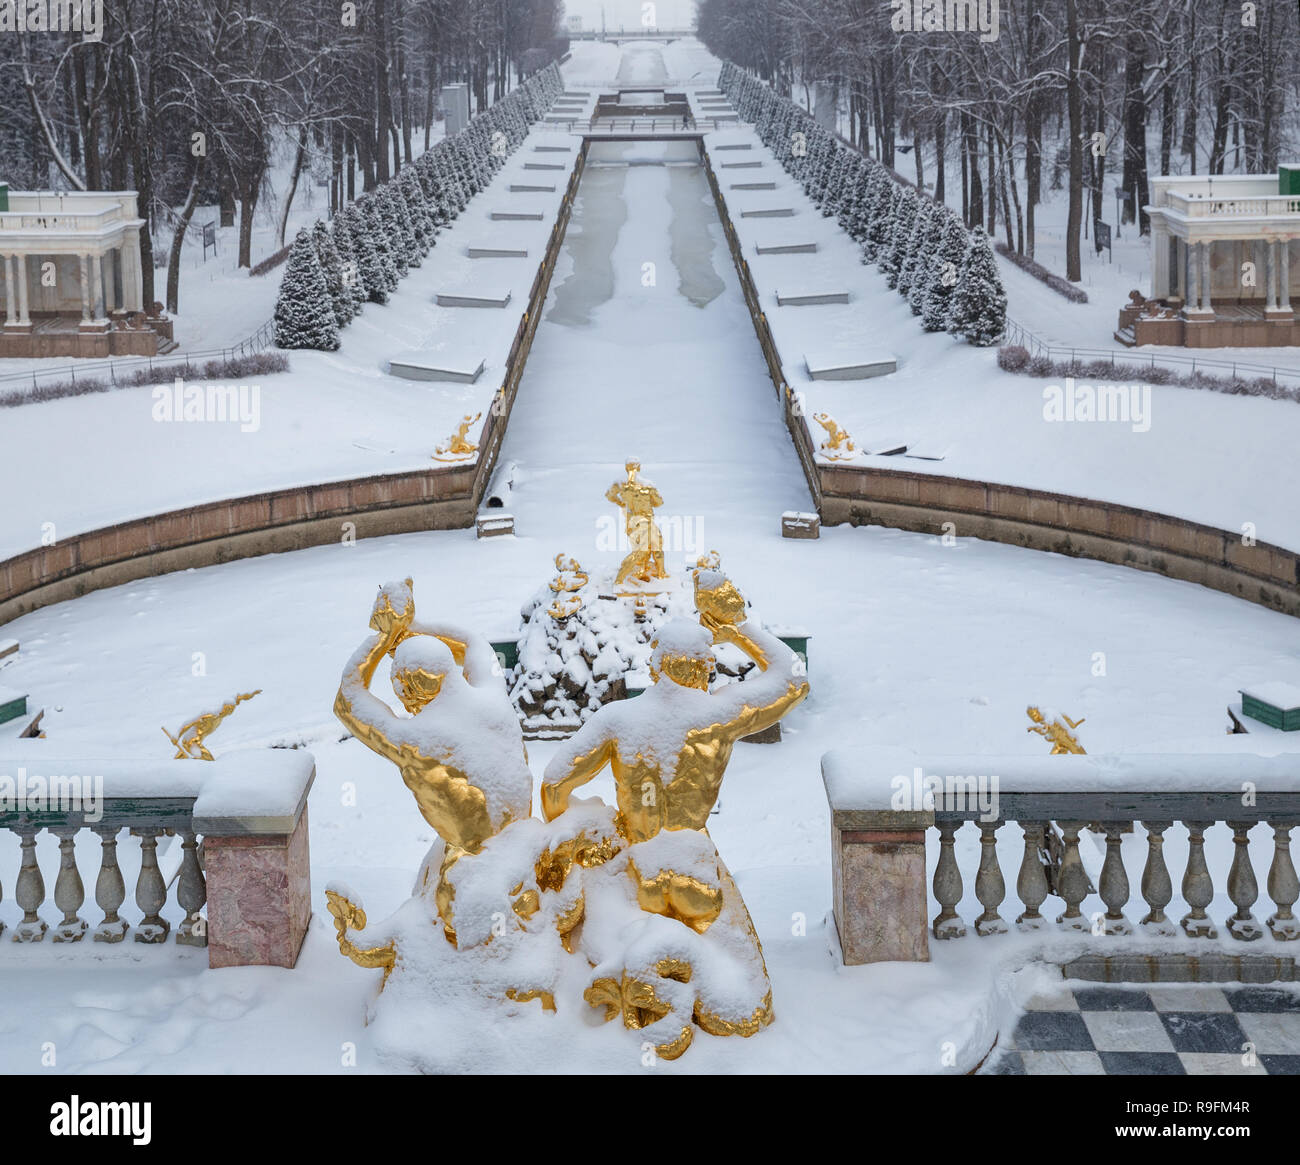 SAINT PETERSBURG, Russland - Januar 22, 2018: Peterhof im Winter. Statuen von Tritonen und Simson reißt das Maul des Löwen gegen das Meer Kanal. Stockfoto